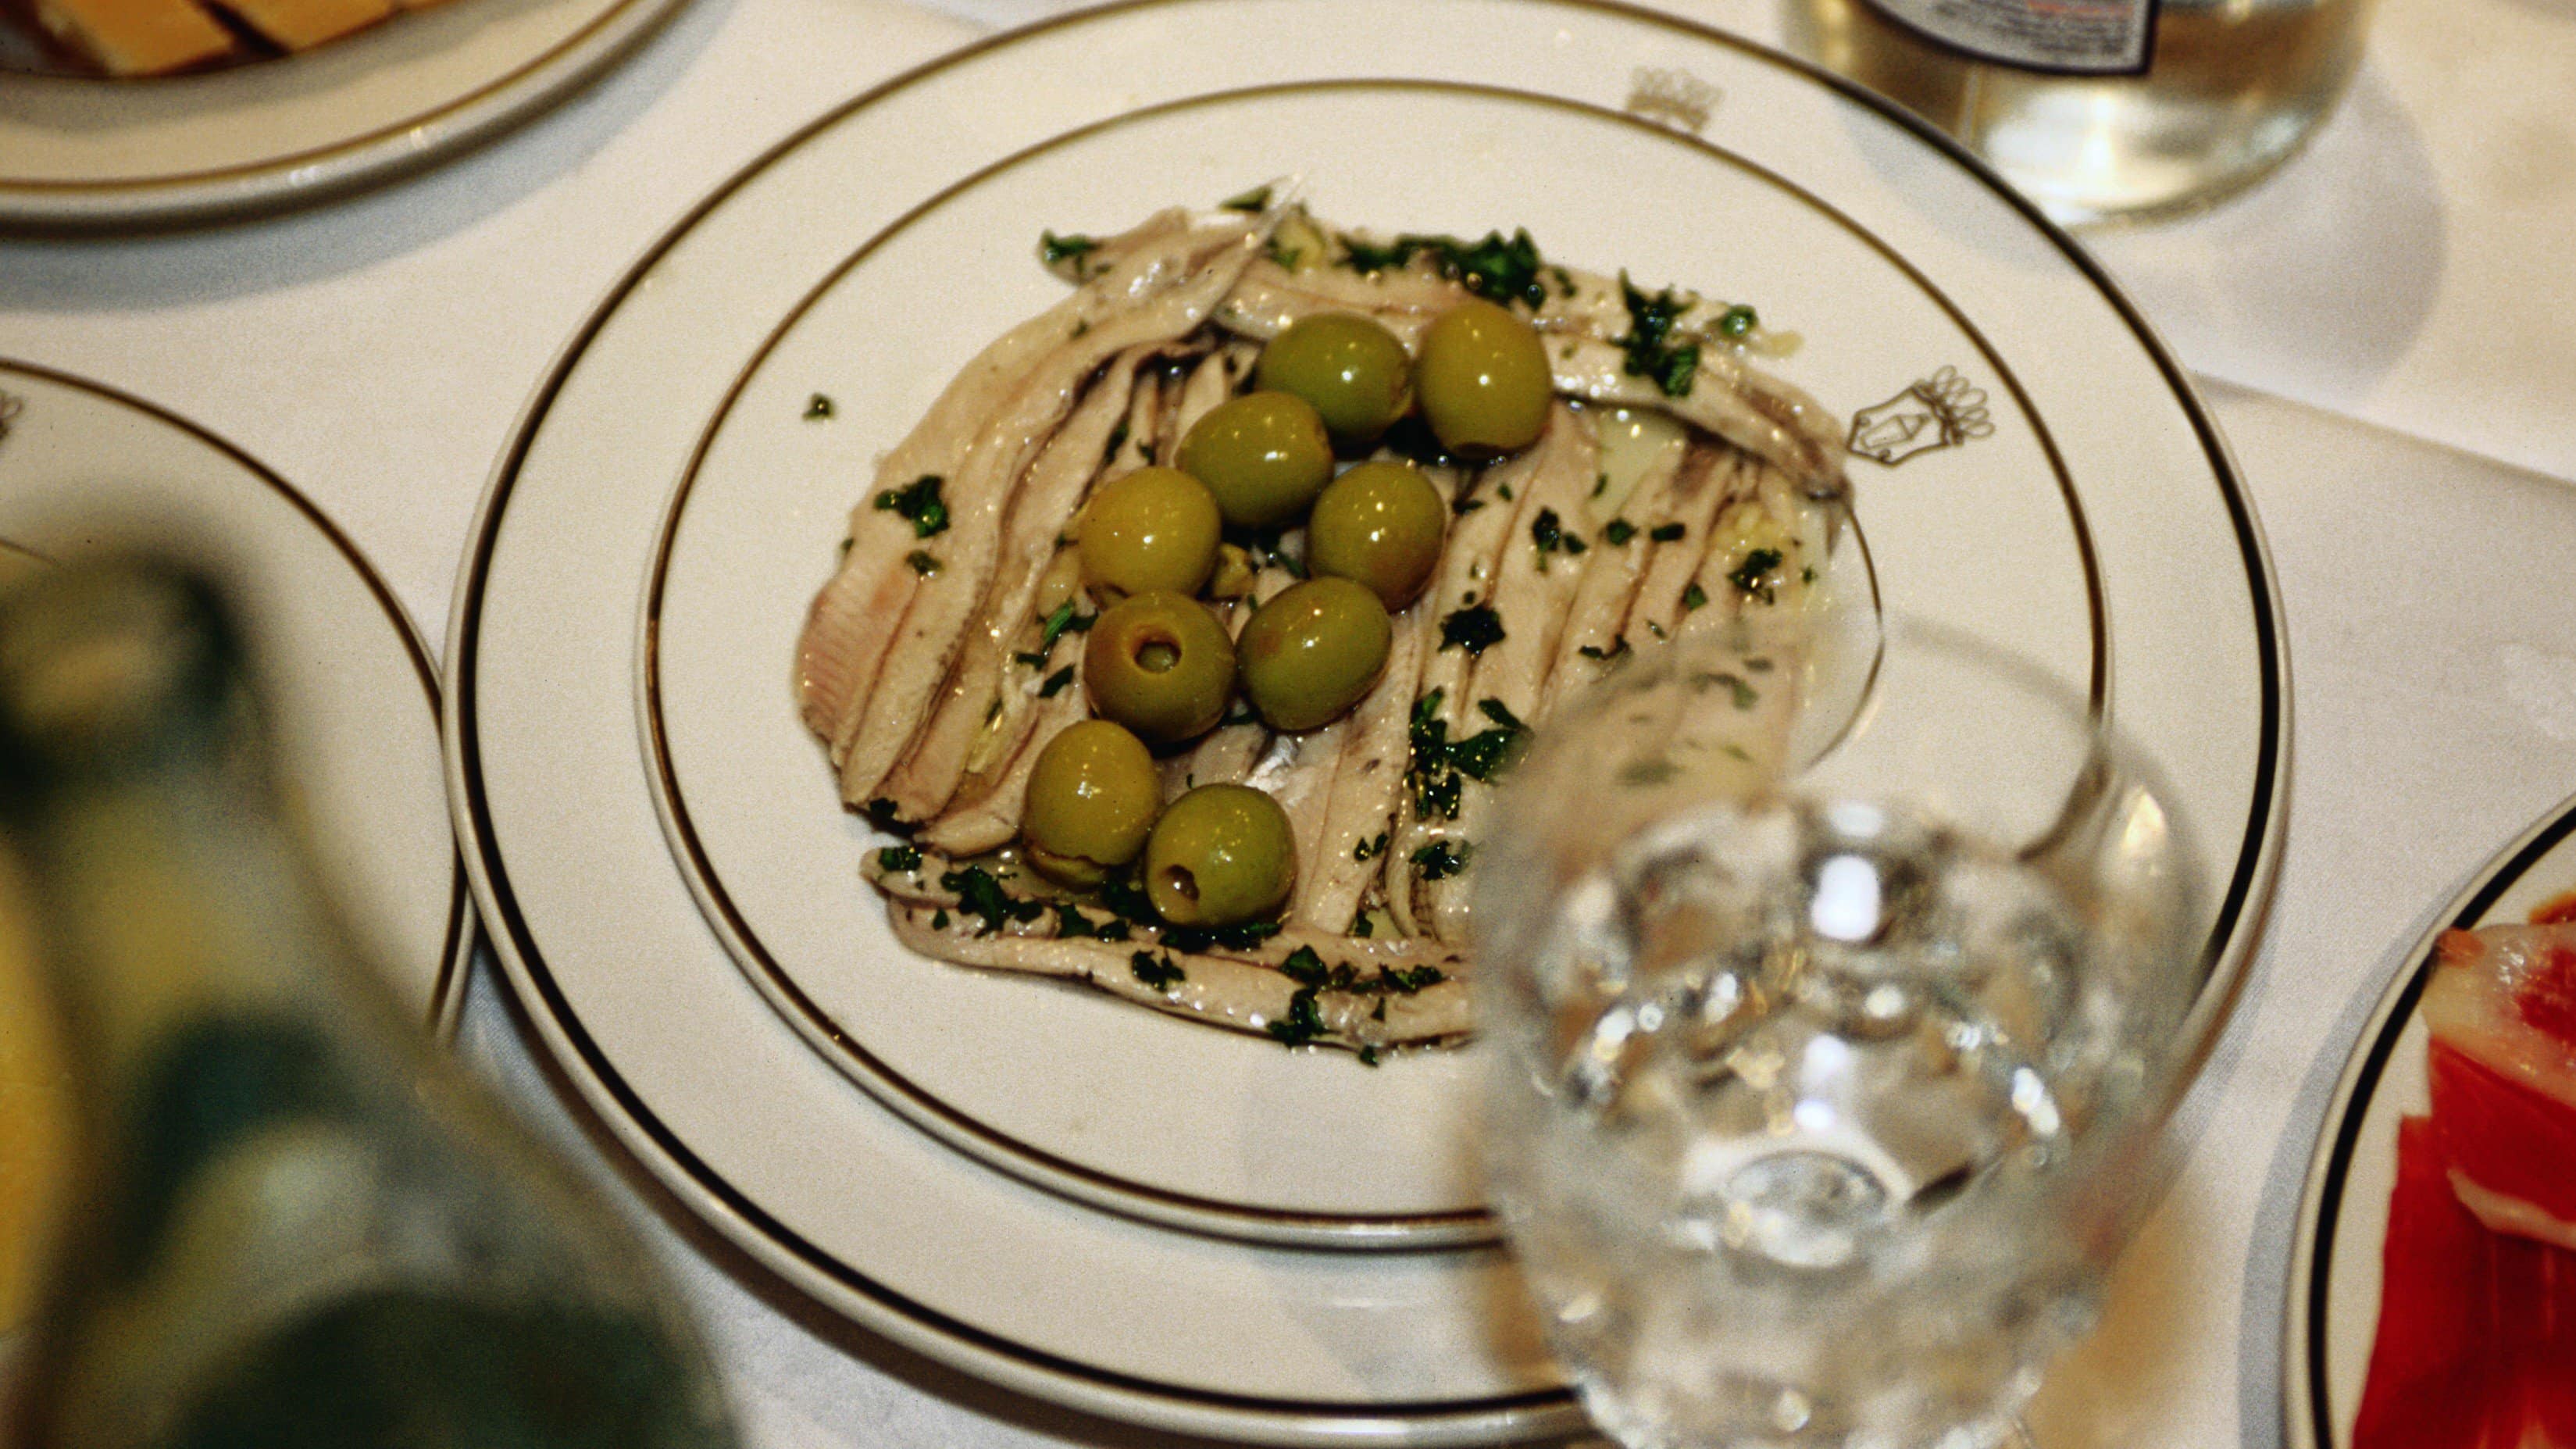 Boquerones en Vinagre eingelegte Sardellen auf weißem Teller und weißem Tisch. Daneben ein Glas Wasser und weitere Tapas am Bildrand. Draufsicht.